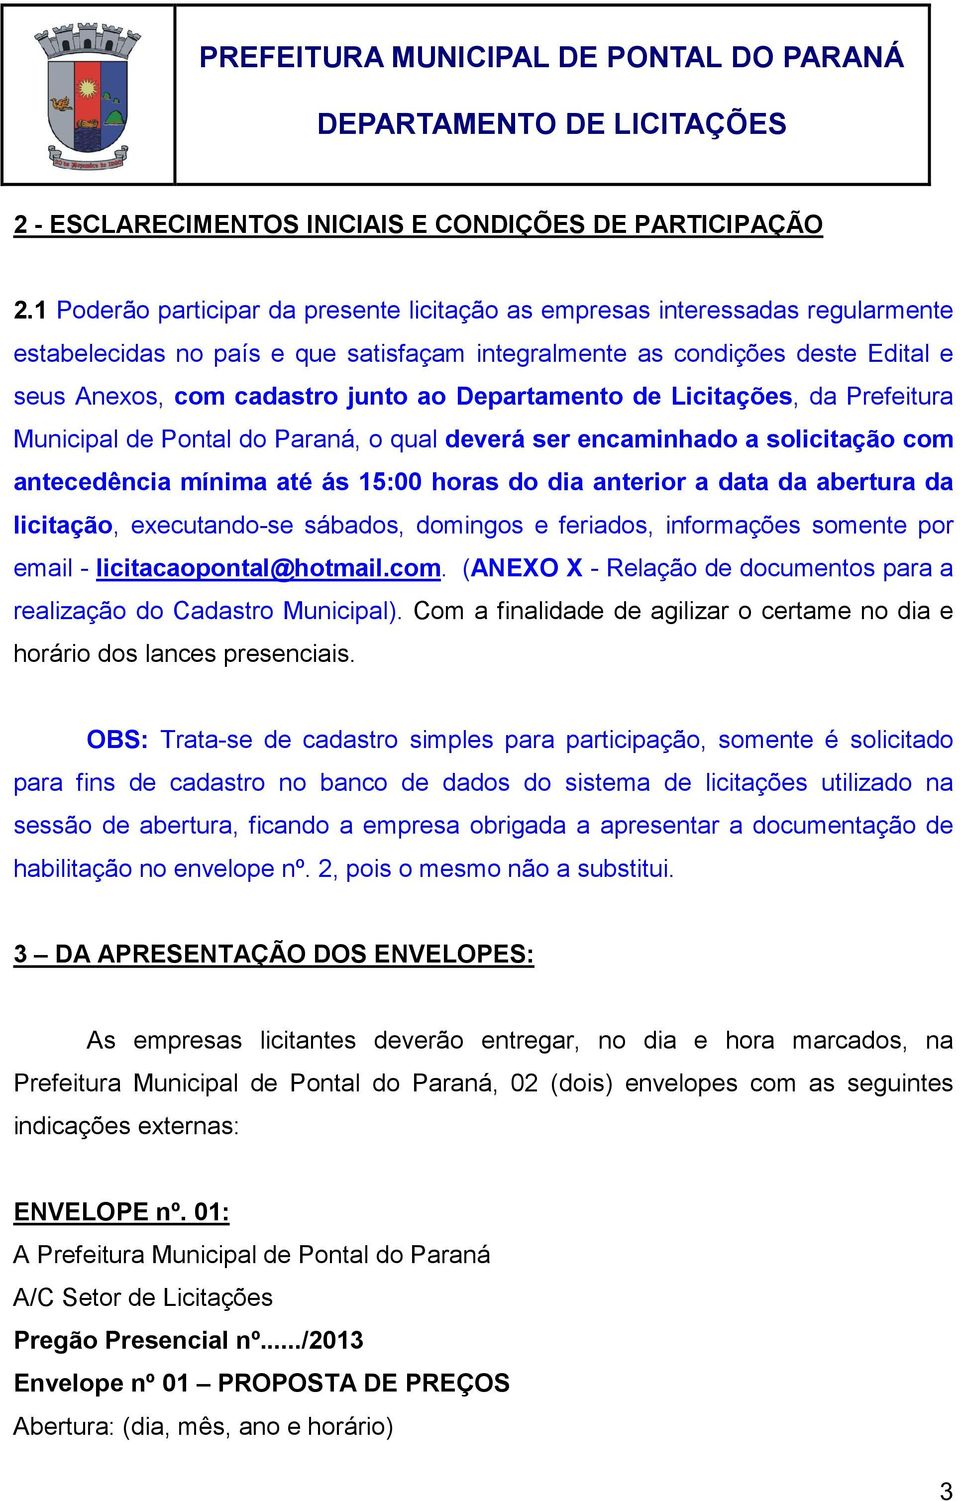 Departamento de Licitações, da Prefeitura Municipal de Pontal do Paraná, o qual deverá ser encaminhado a solicitação com antecedência mínima até ás 15:00 horas do dia anterior a data da abertura da